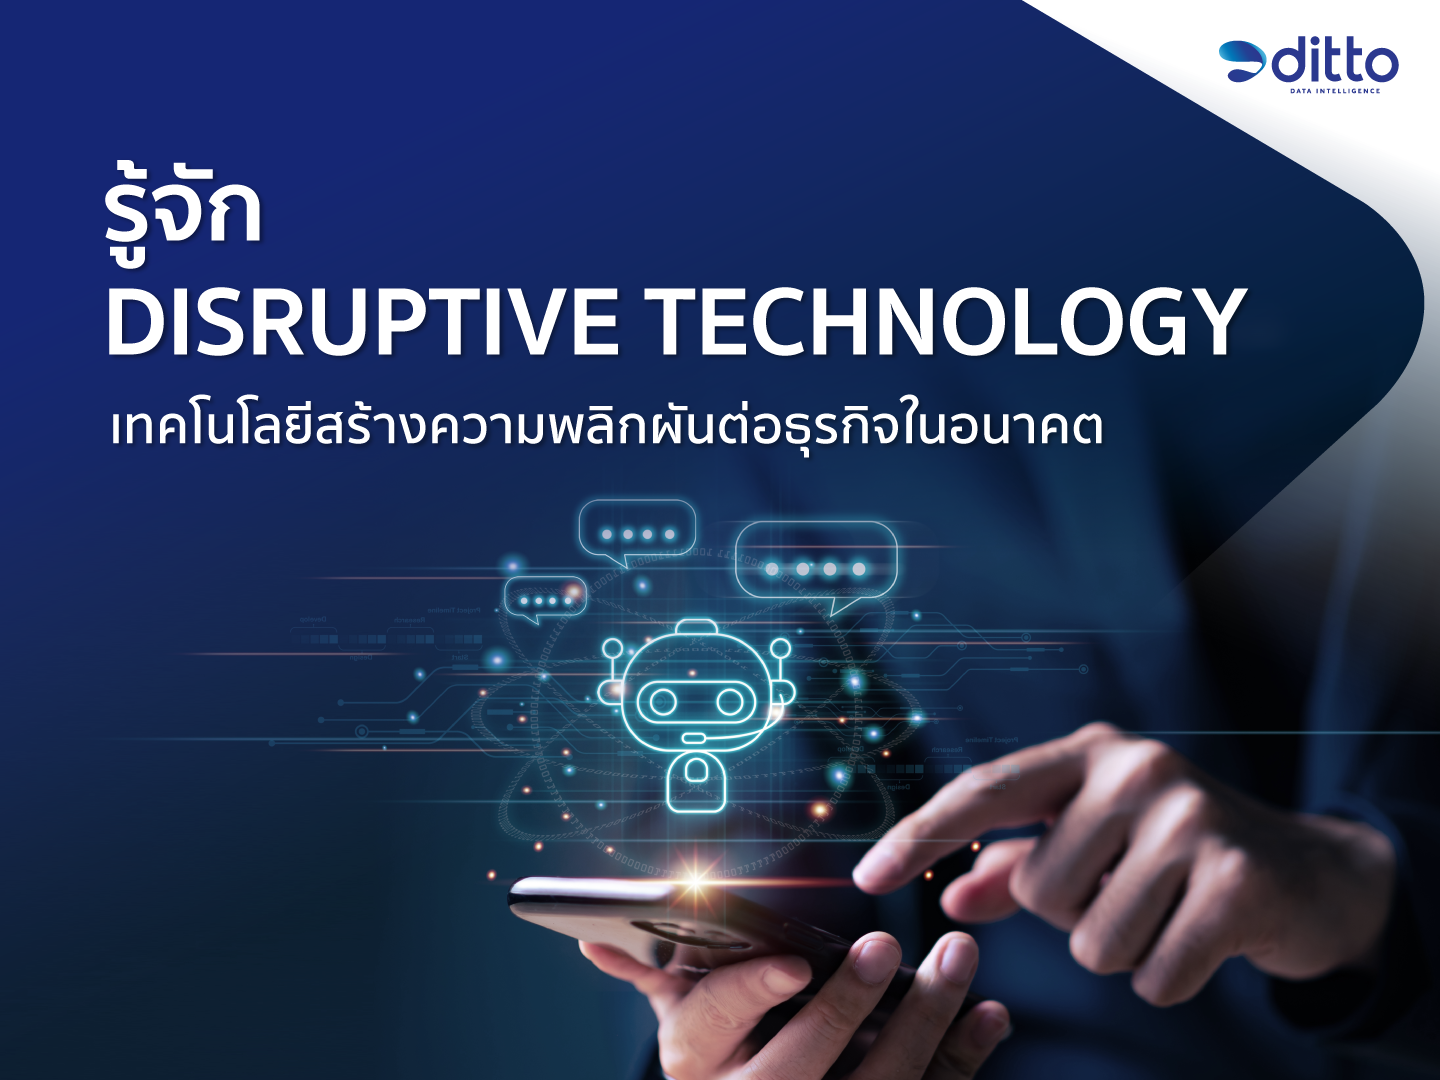 รู้จัก Disruptive Technology เทคโนโลยีสร้างความพลิกผันต่อธุรกิจในอนาคต